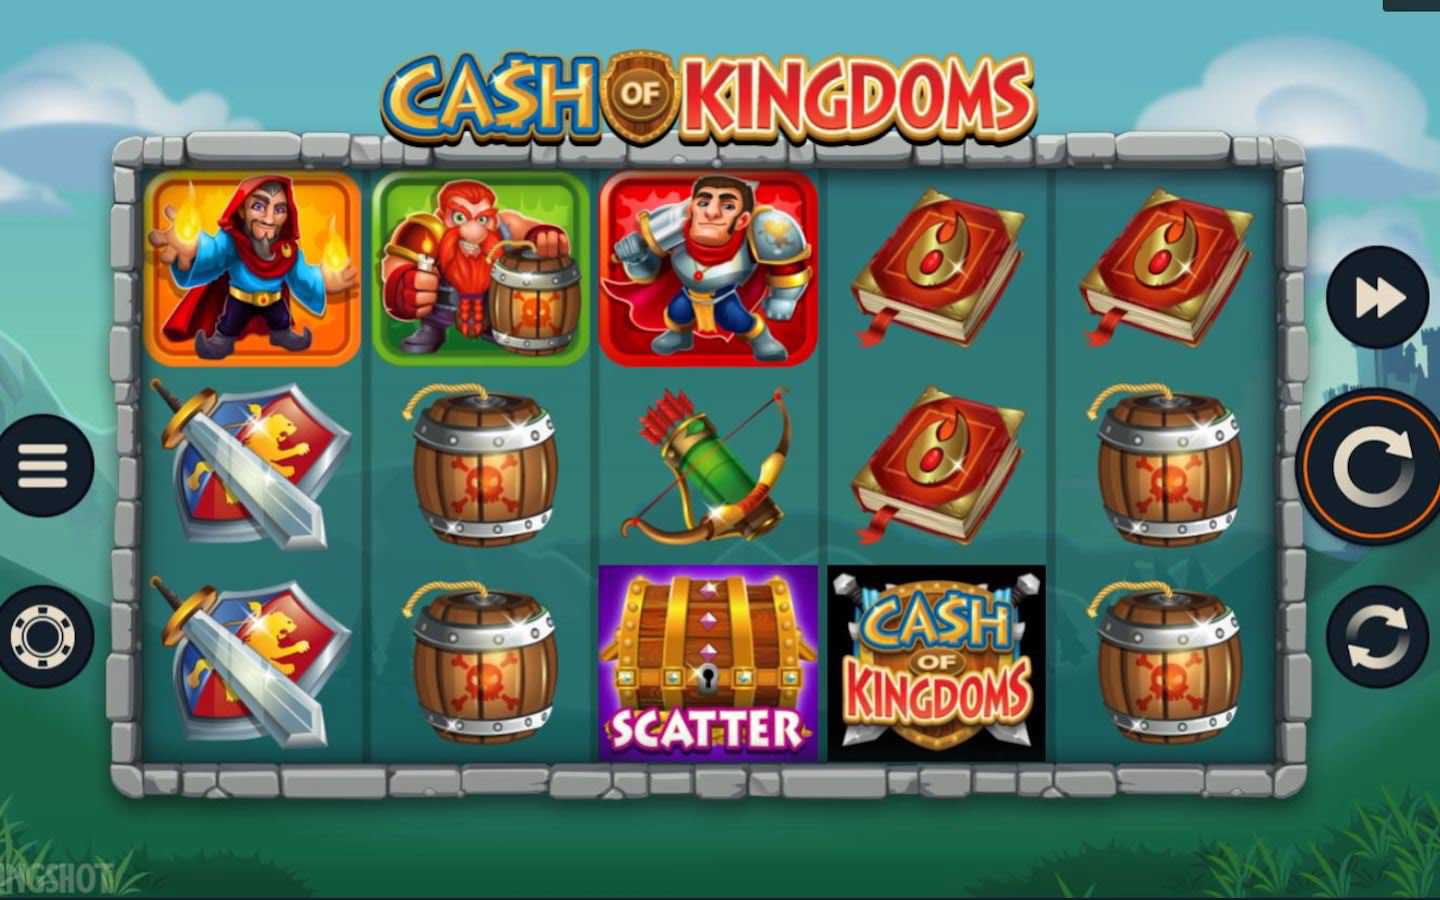 Cash of Kingdoms Slot - игровой слот от Microgaming. Отзывы, обзор игрового автомата, процесс игры видеослота Казна Королевства от Микрогейминг. Бонус и регистрация!